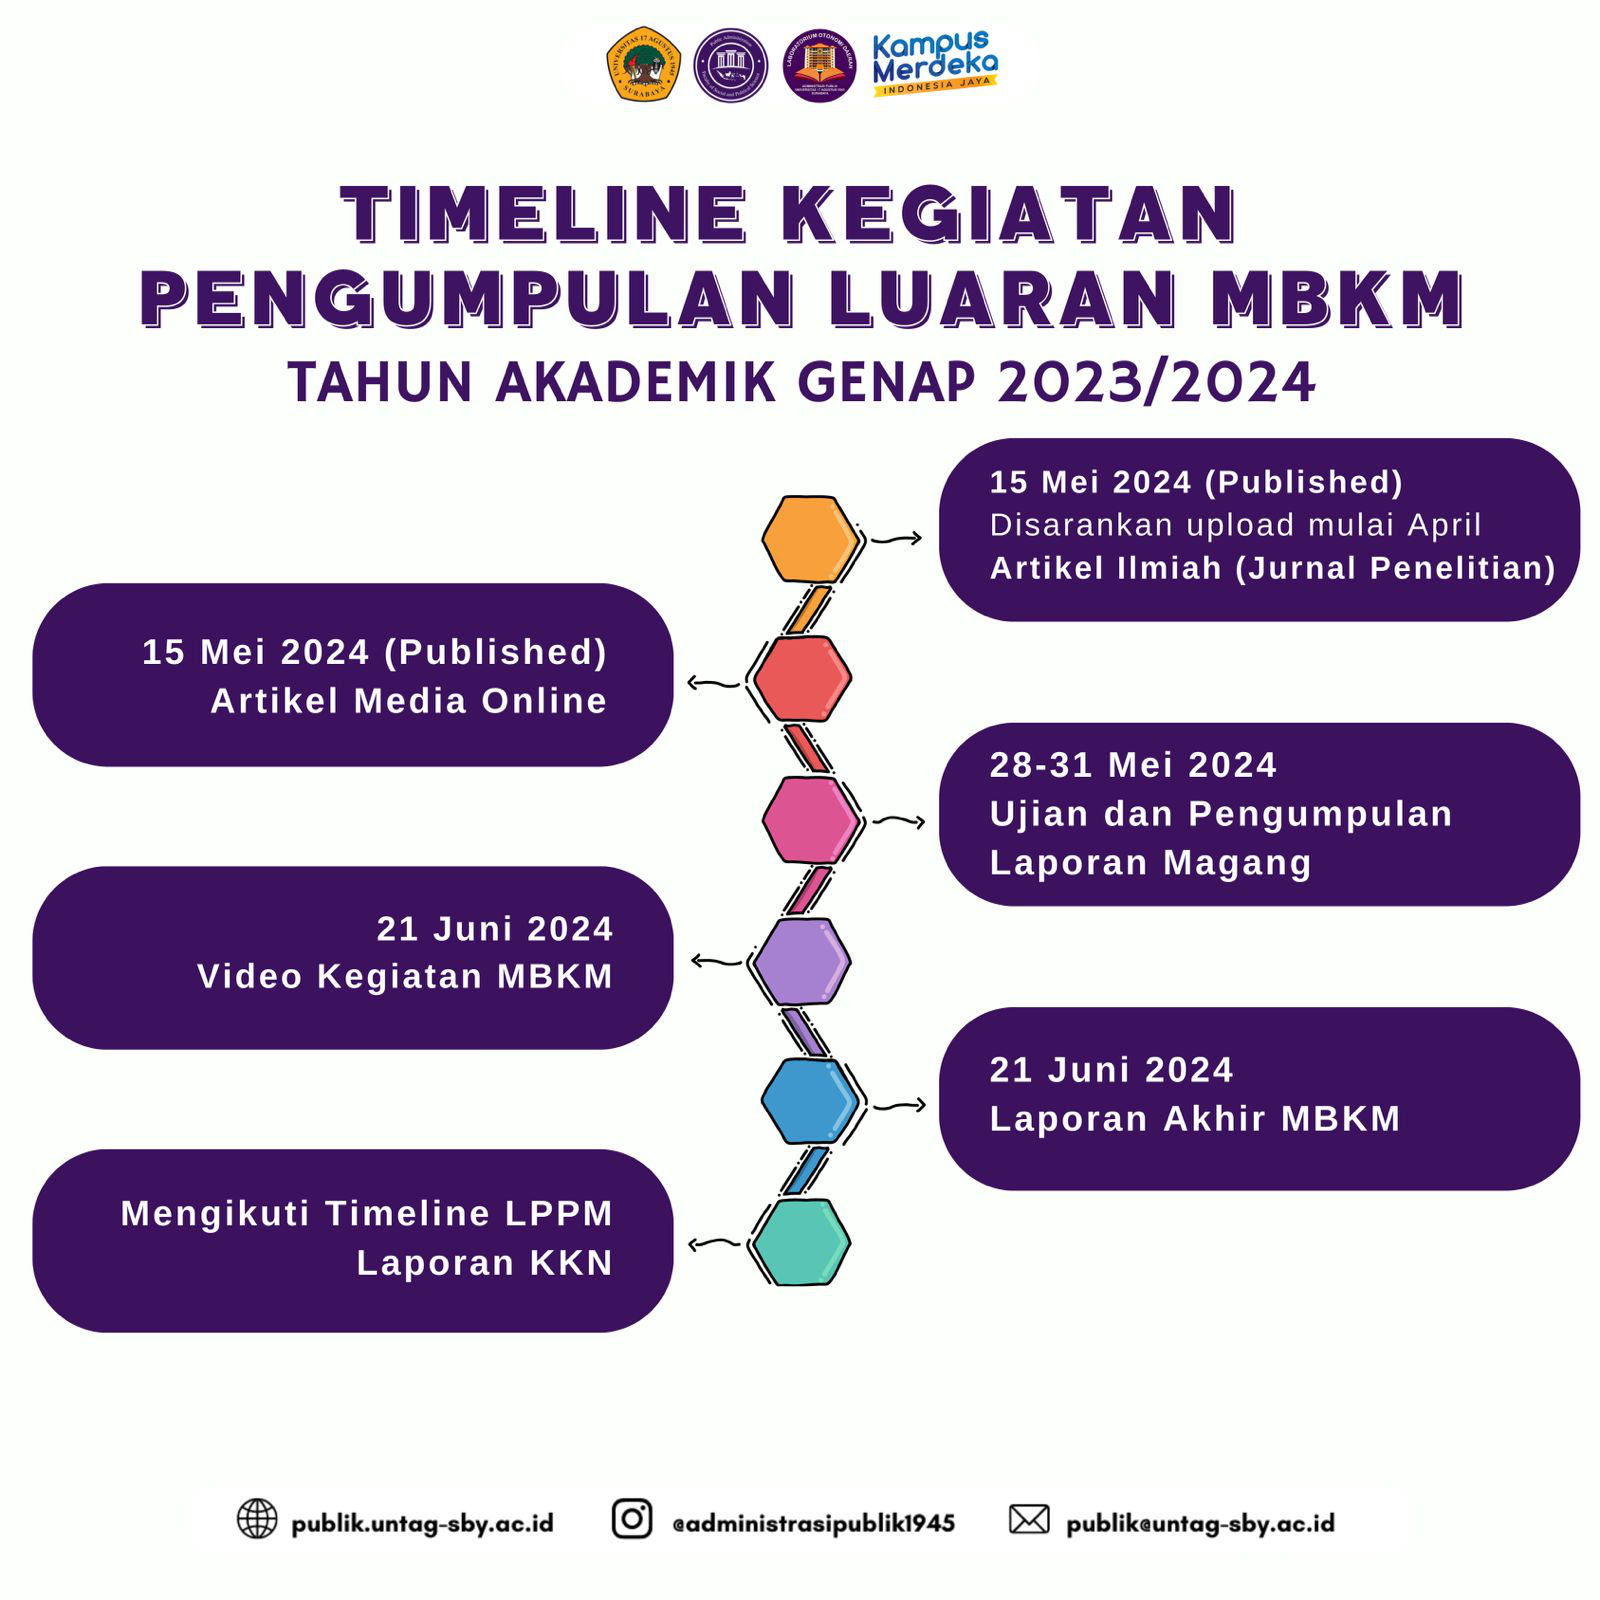 TIMELINE PENGUMPULAN LUARAN MBKM GENAP 2023/2024